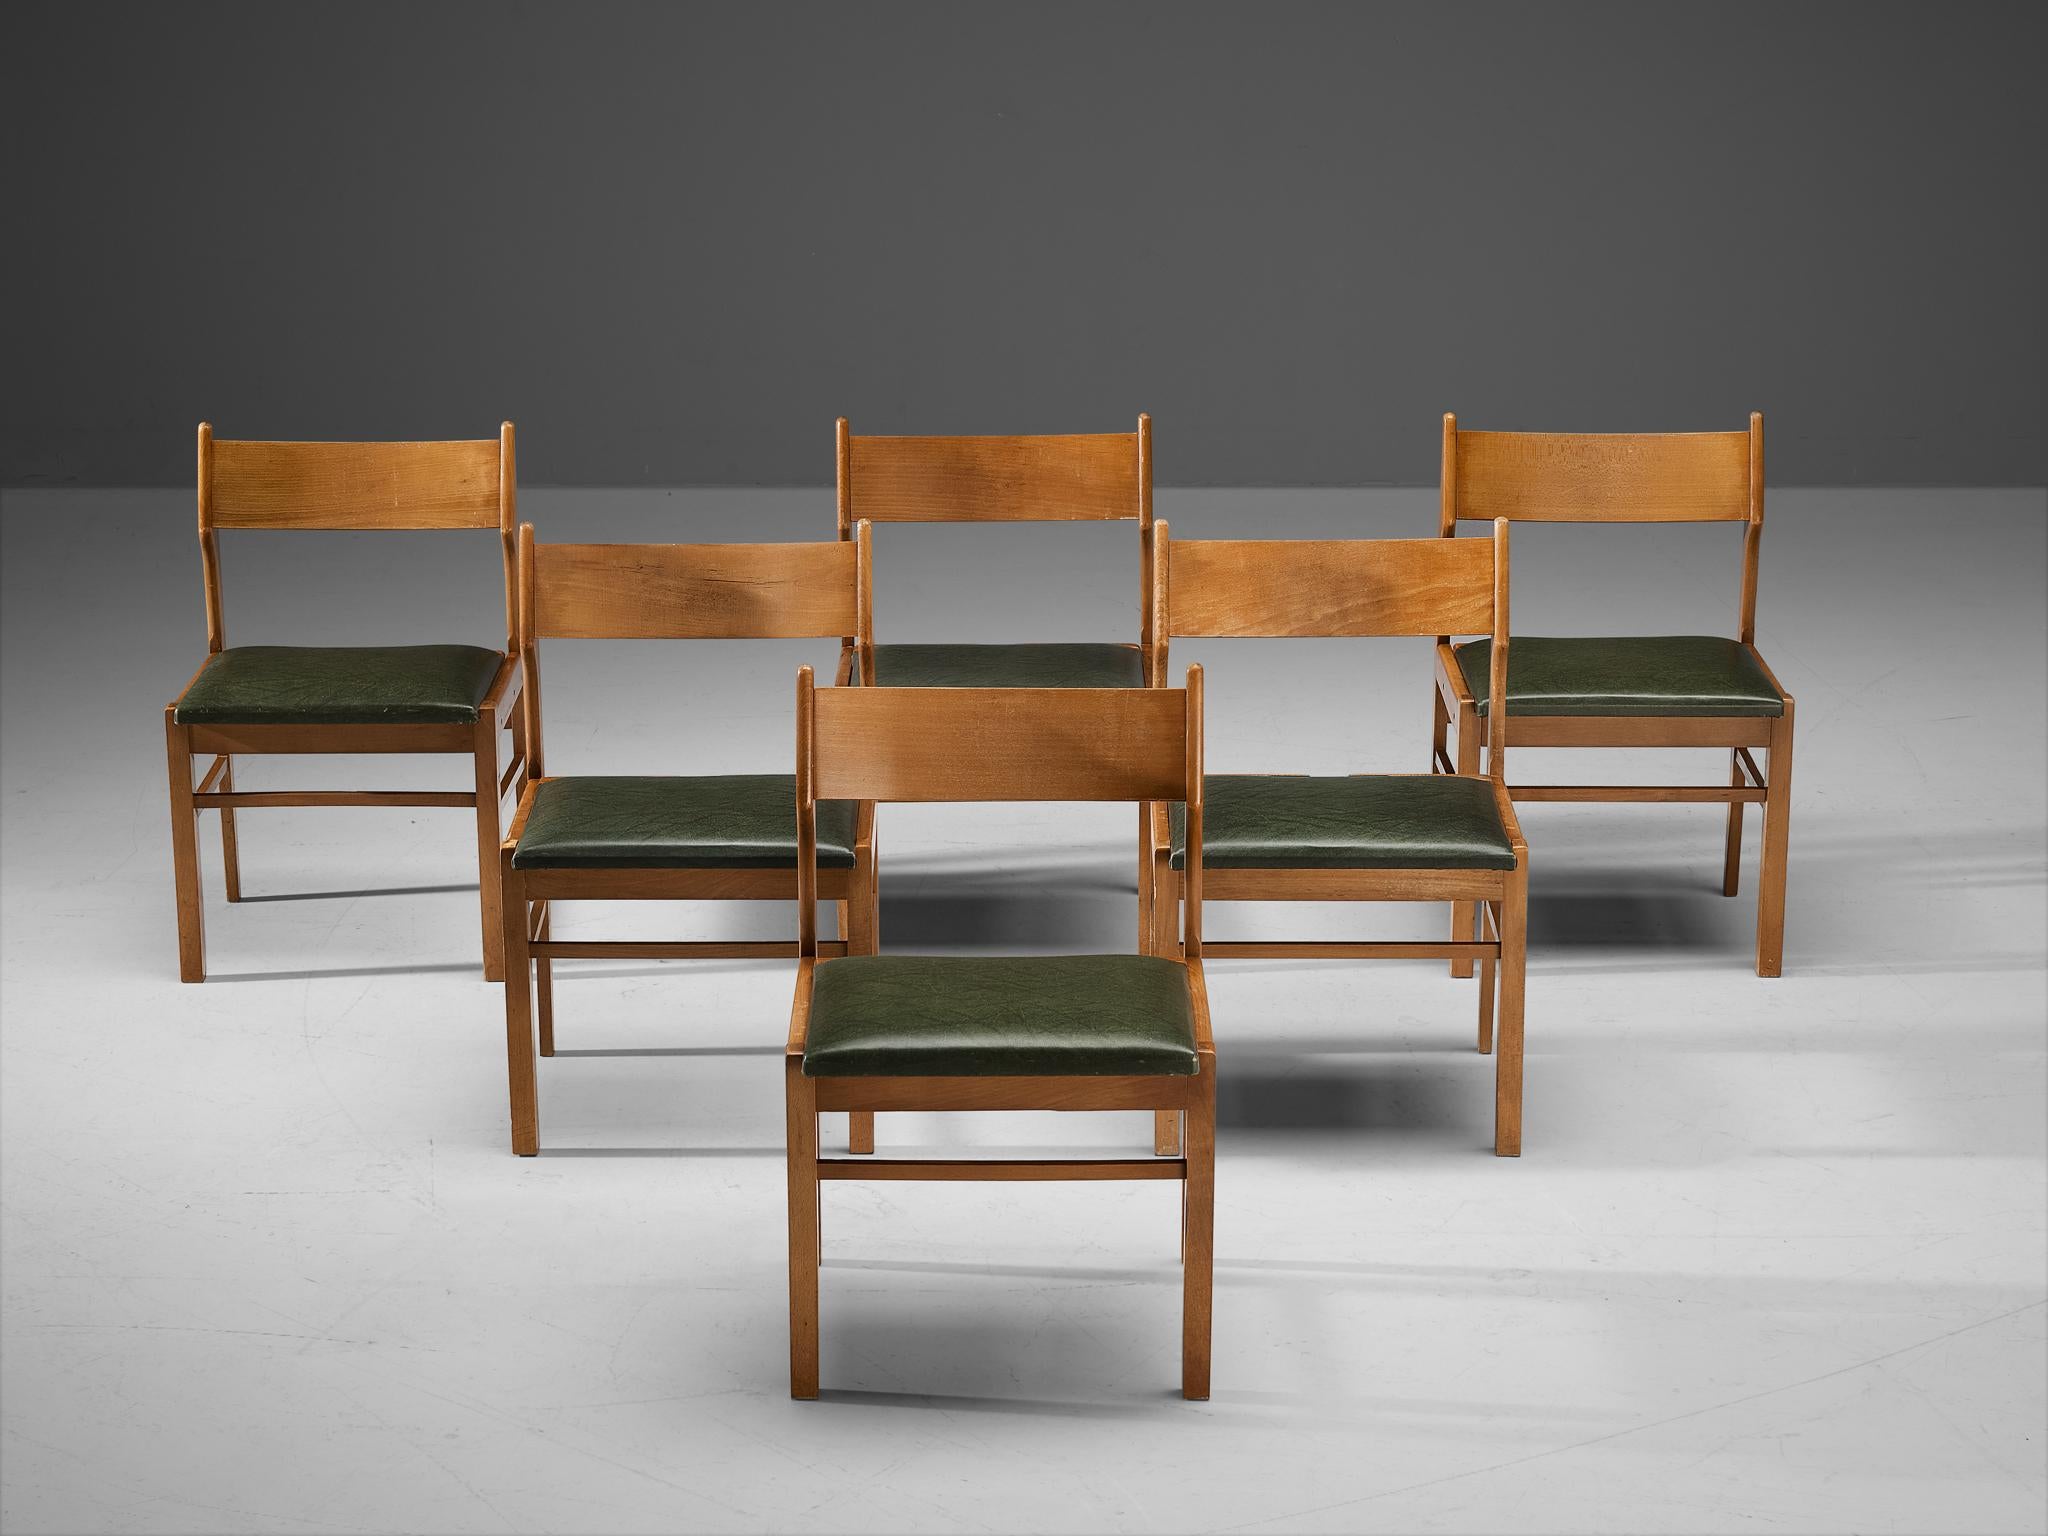 Esszimmerstühle, Holz, dunkelgrünes Kunstleder, Niederlande, 1960er Jahre. 

Bescheidener Satz von sechs Esszimmerstühlen. Sein Design zeigt klare Linien und eine offene Rücksitzbank. Die dunkelgrünen Kunstledersitze bilden einen auffälligen